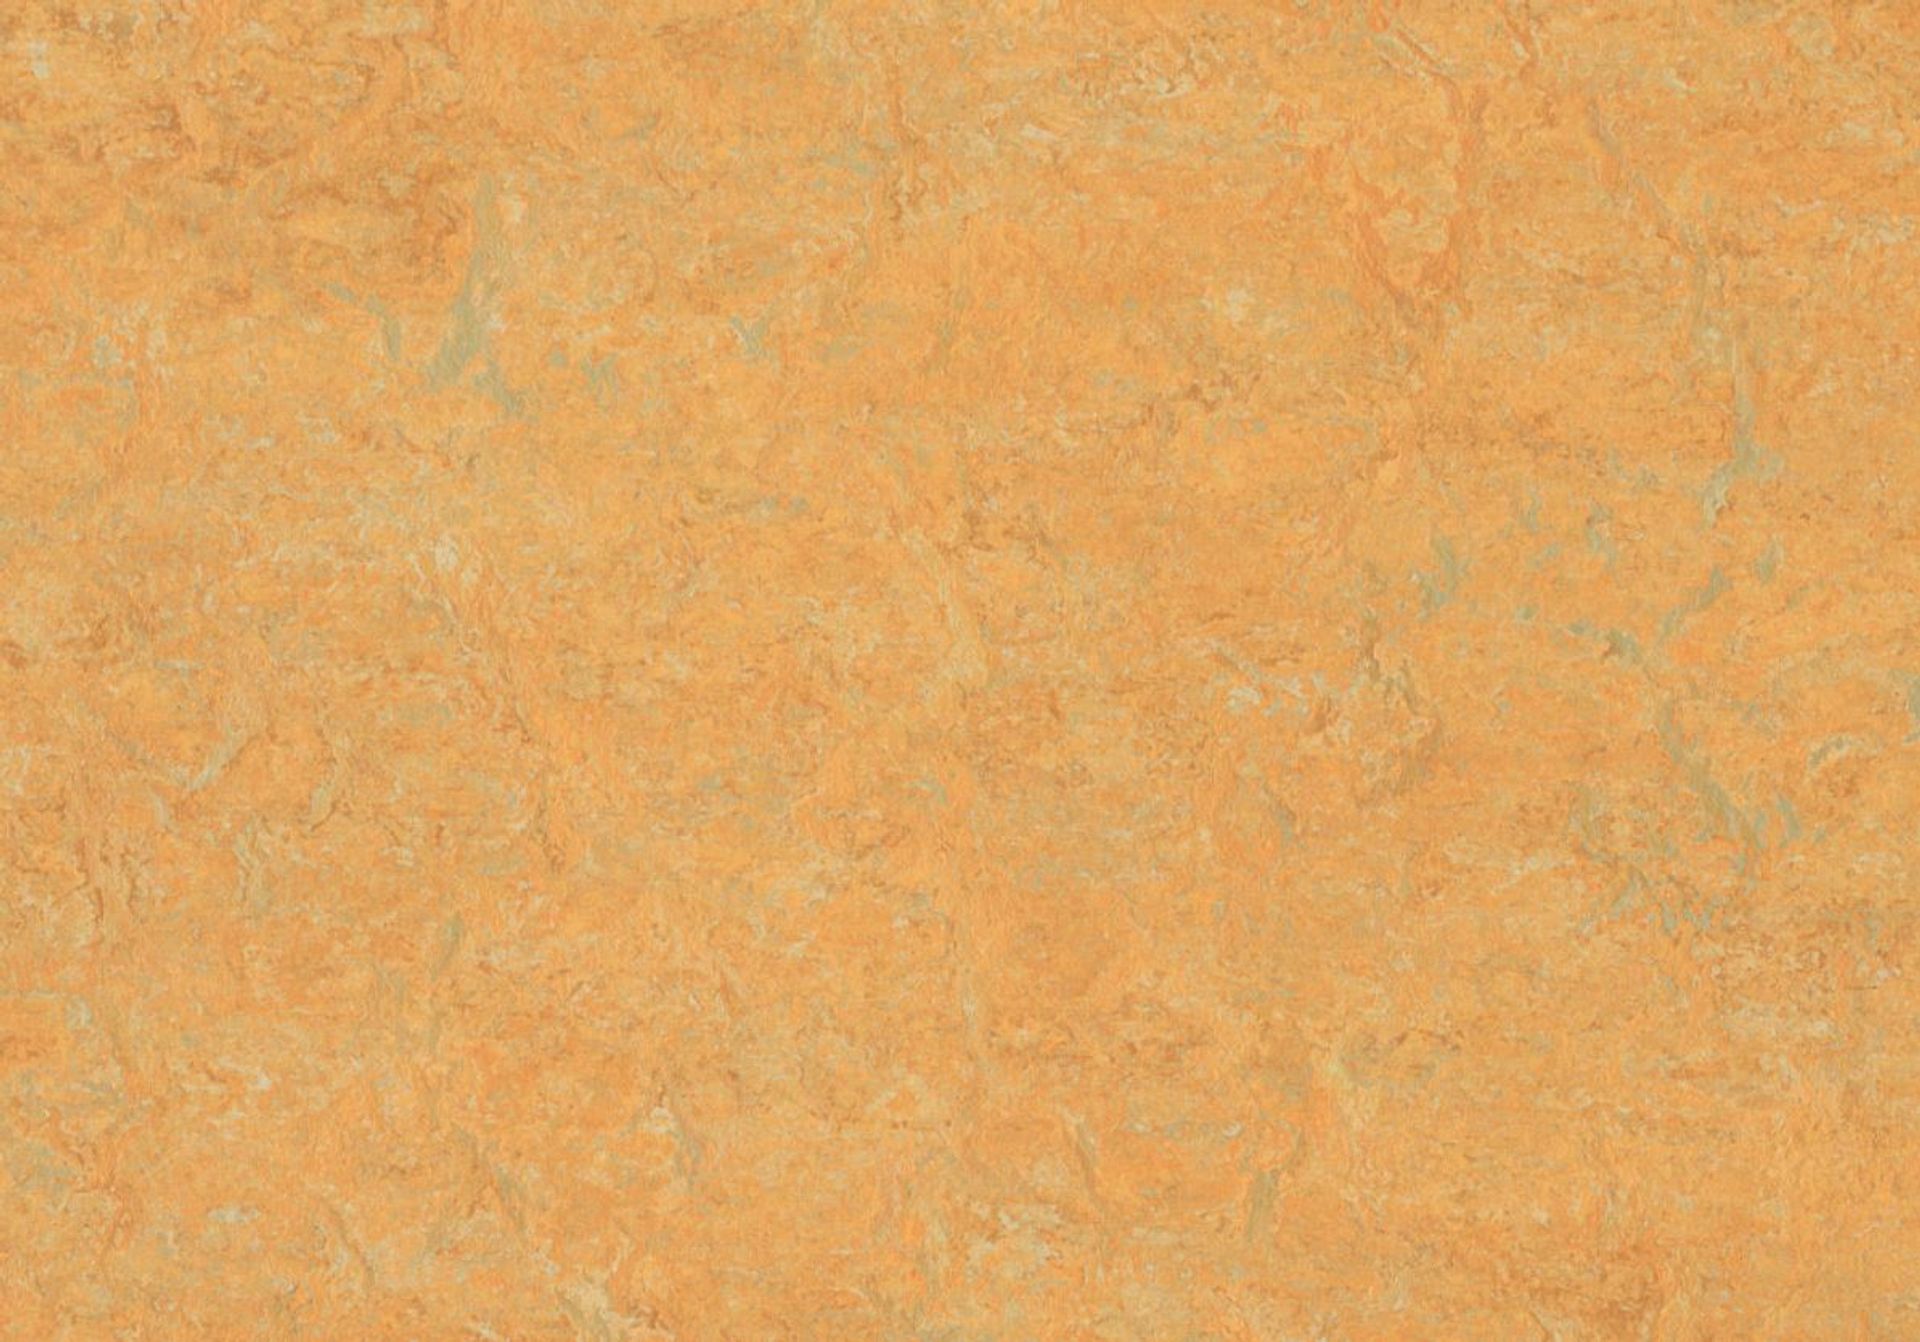 Linoleum-Boden Jokalino 1020 golden saffron Gesamtstärke 2,5 mm - Rollenbreite 200 cm